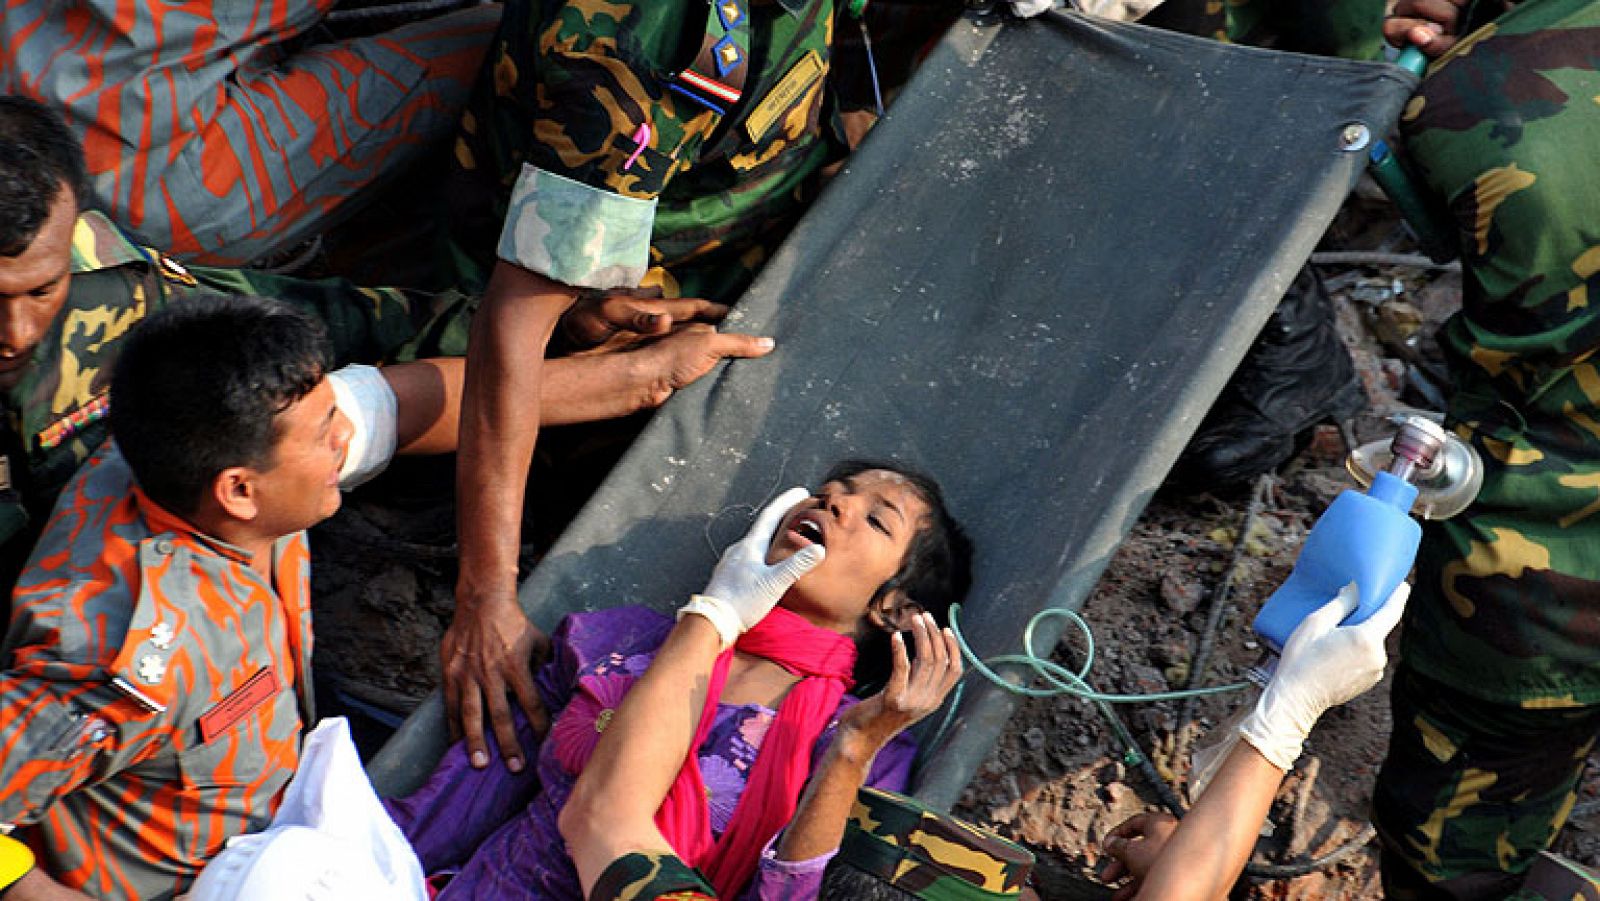  Dieciséis días del derrumbe un complejo de talleres textiles en Bangladesh, ha aparecido entre los escombros una mujer con vida. Fue localizada entre un falso techo y una columna. La joven se llama Reshmi y se encuentra en buen estado de salud